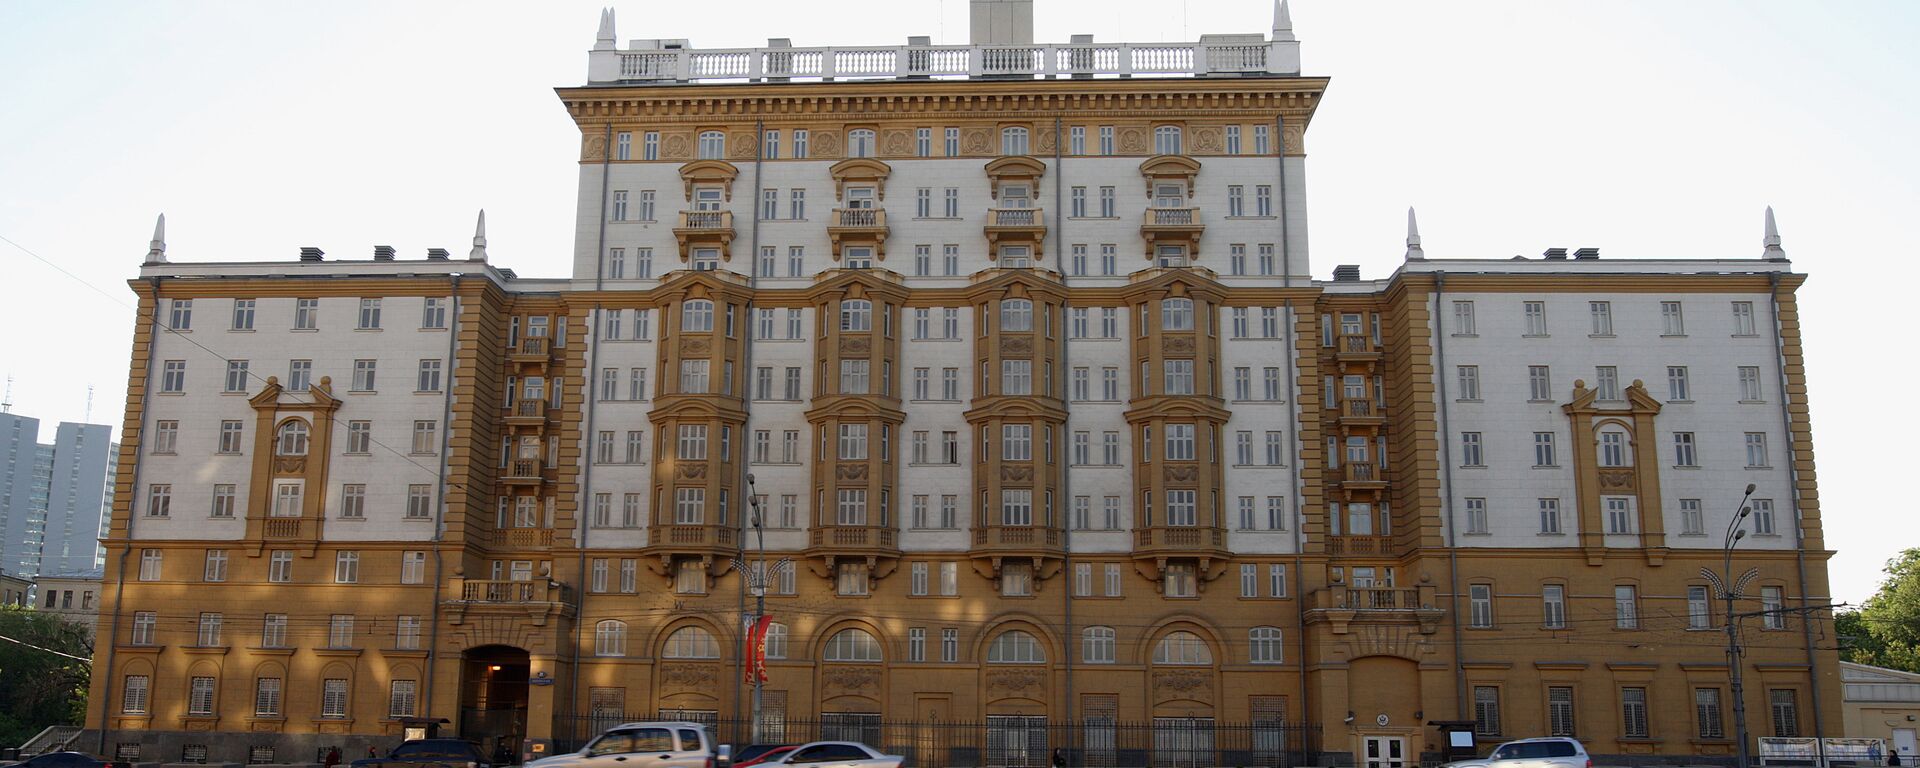 Америчка амбасада у Москви - Sputnik Србија, 1920, 25.08.2021